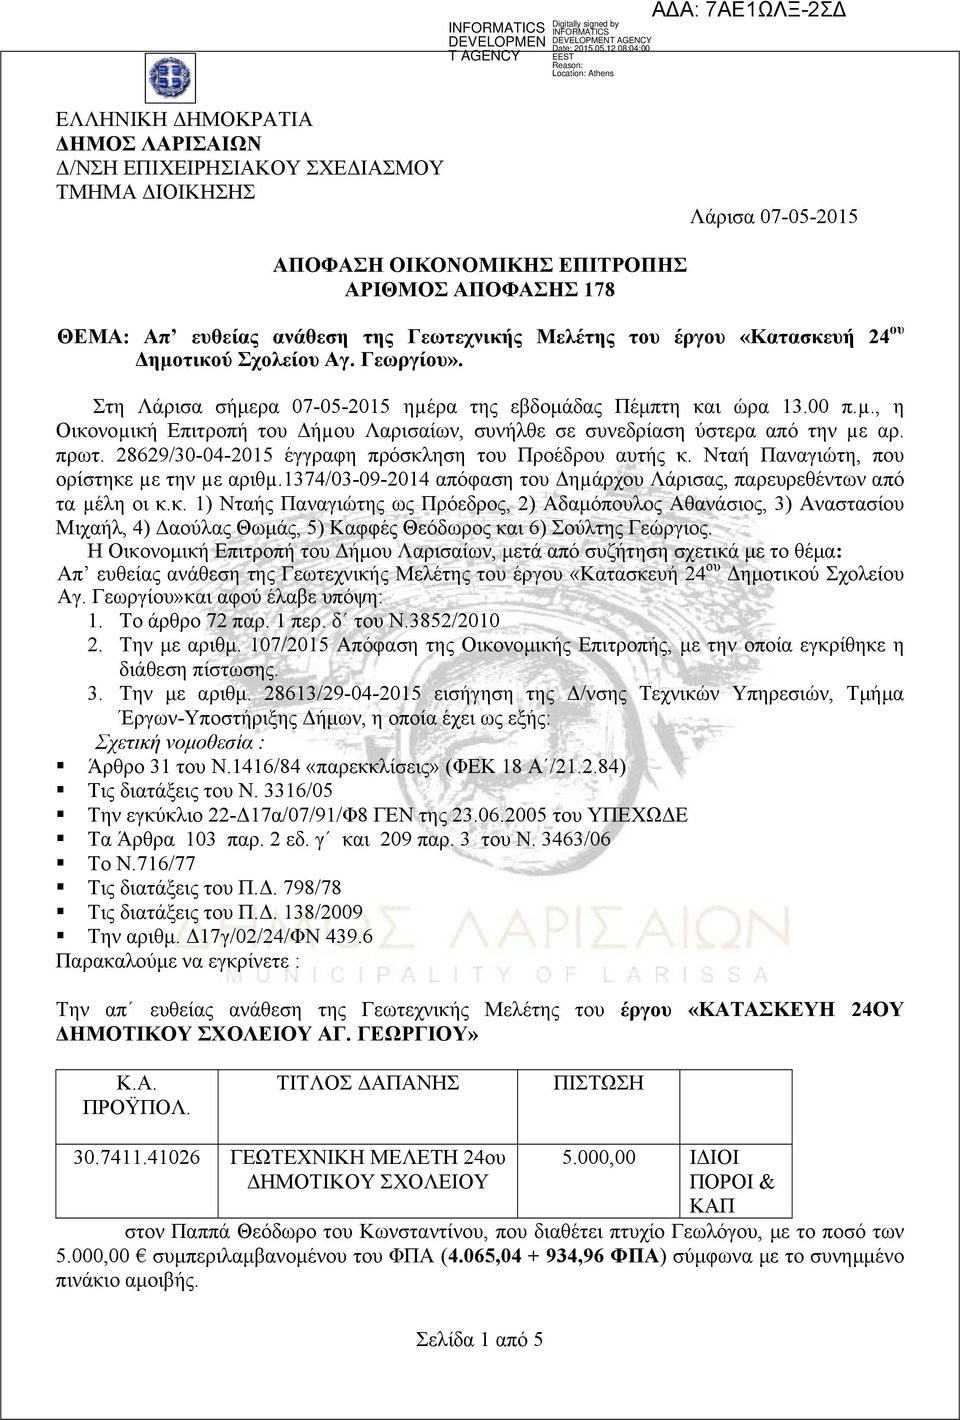 πρωτ. 28629/30-04-2015 έγγραφη πρόσκληση του Προέδρου αυτής κ. Νταή Παναγιώτη, που ορίστηκε µε την µε αριθµ.1374/03-09-2014 απόφαση του Δηµάρχου Λάρισας, παρευρεθέντων από τα µέλη οι κ.κ. 1) Νταής Παναγιώτης ως Πρόεδρος, 2) Αδαμόπουλος Αθανάσιος, 3) Αναστασίου Μιχαήλ, 4) Δαούλας Θωμάς, 5) Καφφές Θεόδωρος και 6) Σούλτης Γεώργιος.